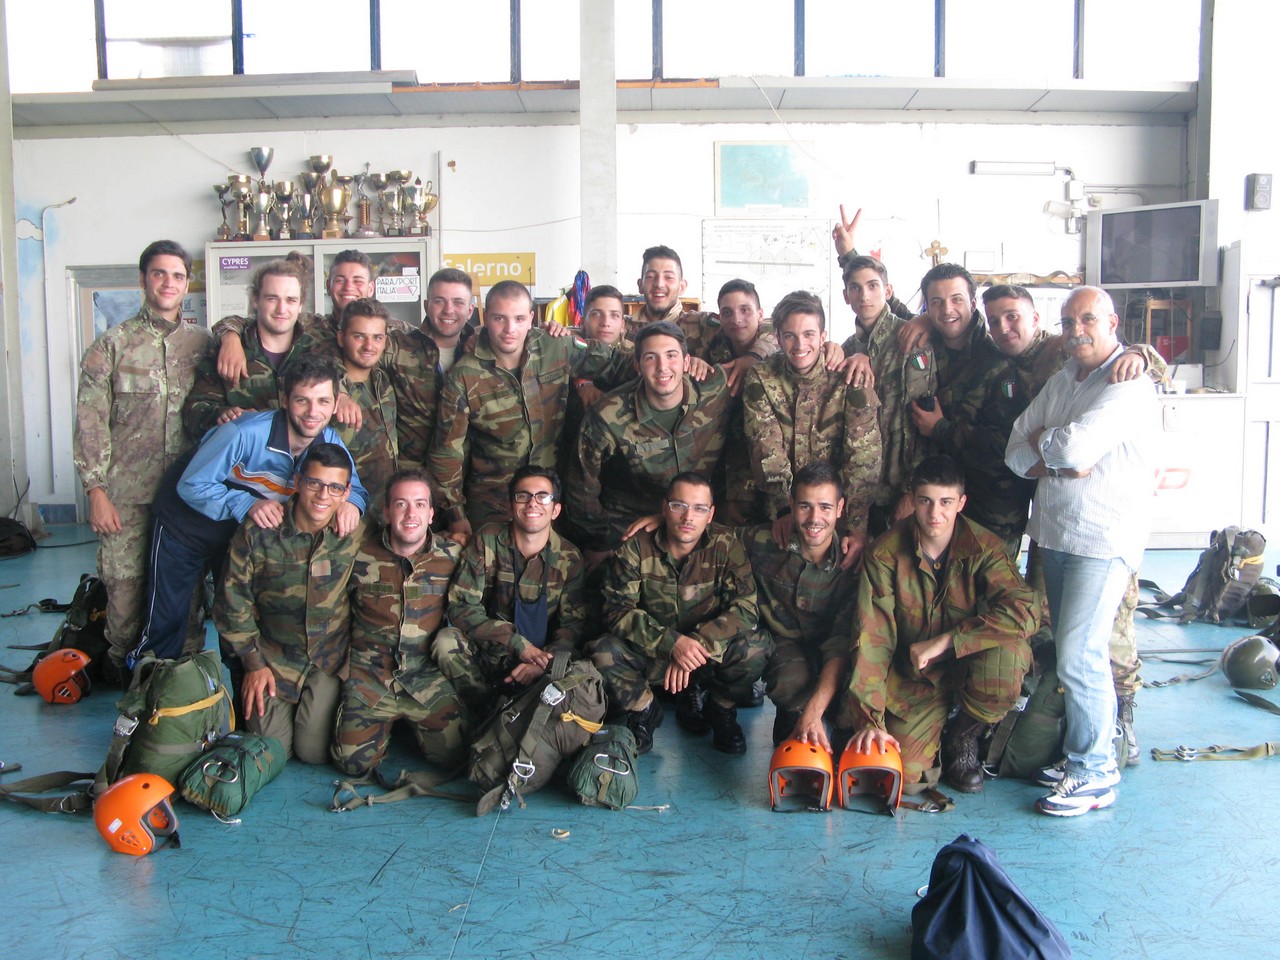 Lanci 2013 Paracadutisti Caserta